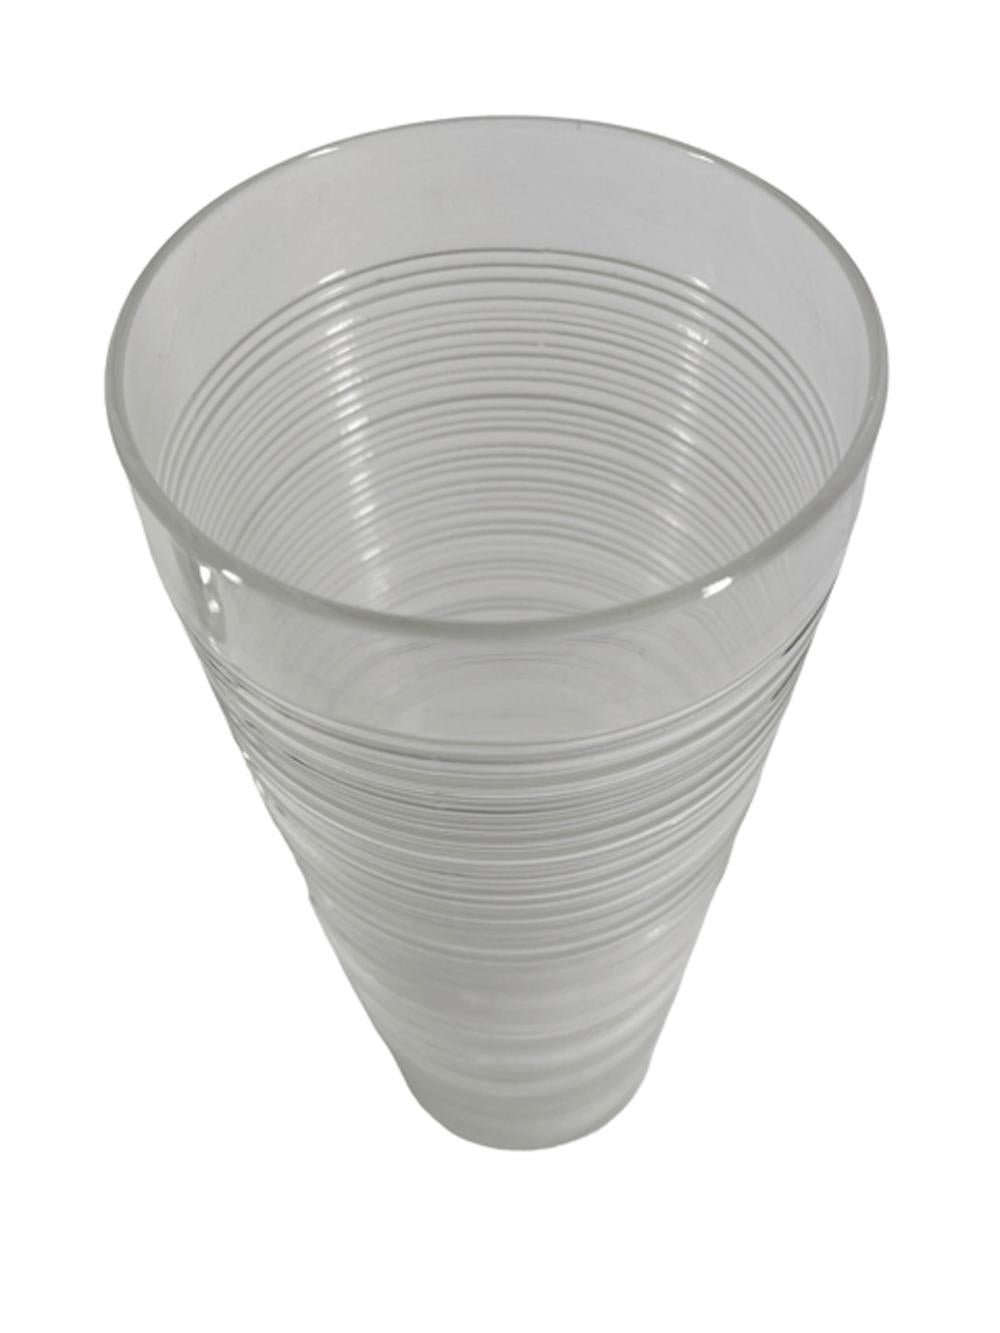 Shakers de cocktail Imperial Glass Co de forme cylindrique en verre fileté transparent avec couvercle chromé. Le design de ce Shakers date de 1935 et a été réédité dans les années 1950 dans cette version de 48 oz.